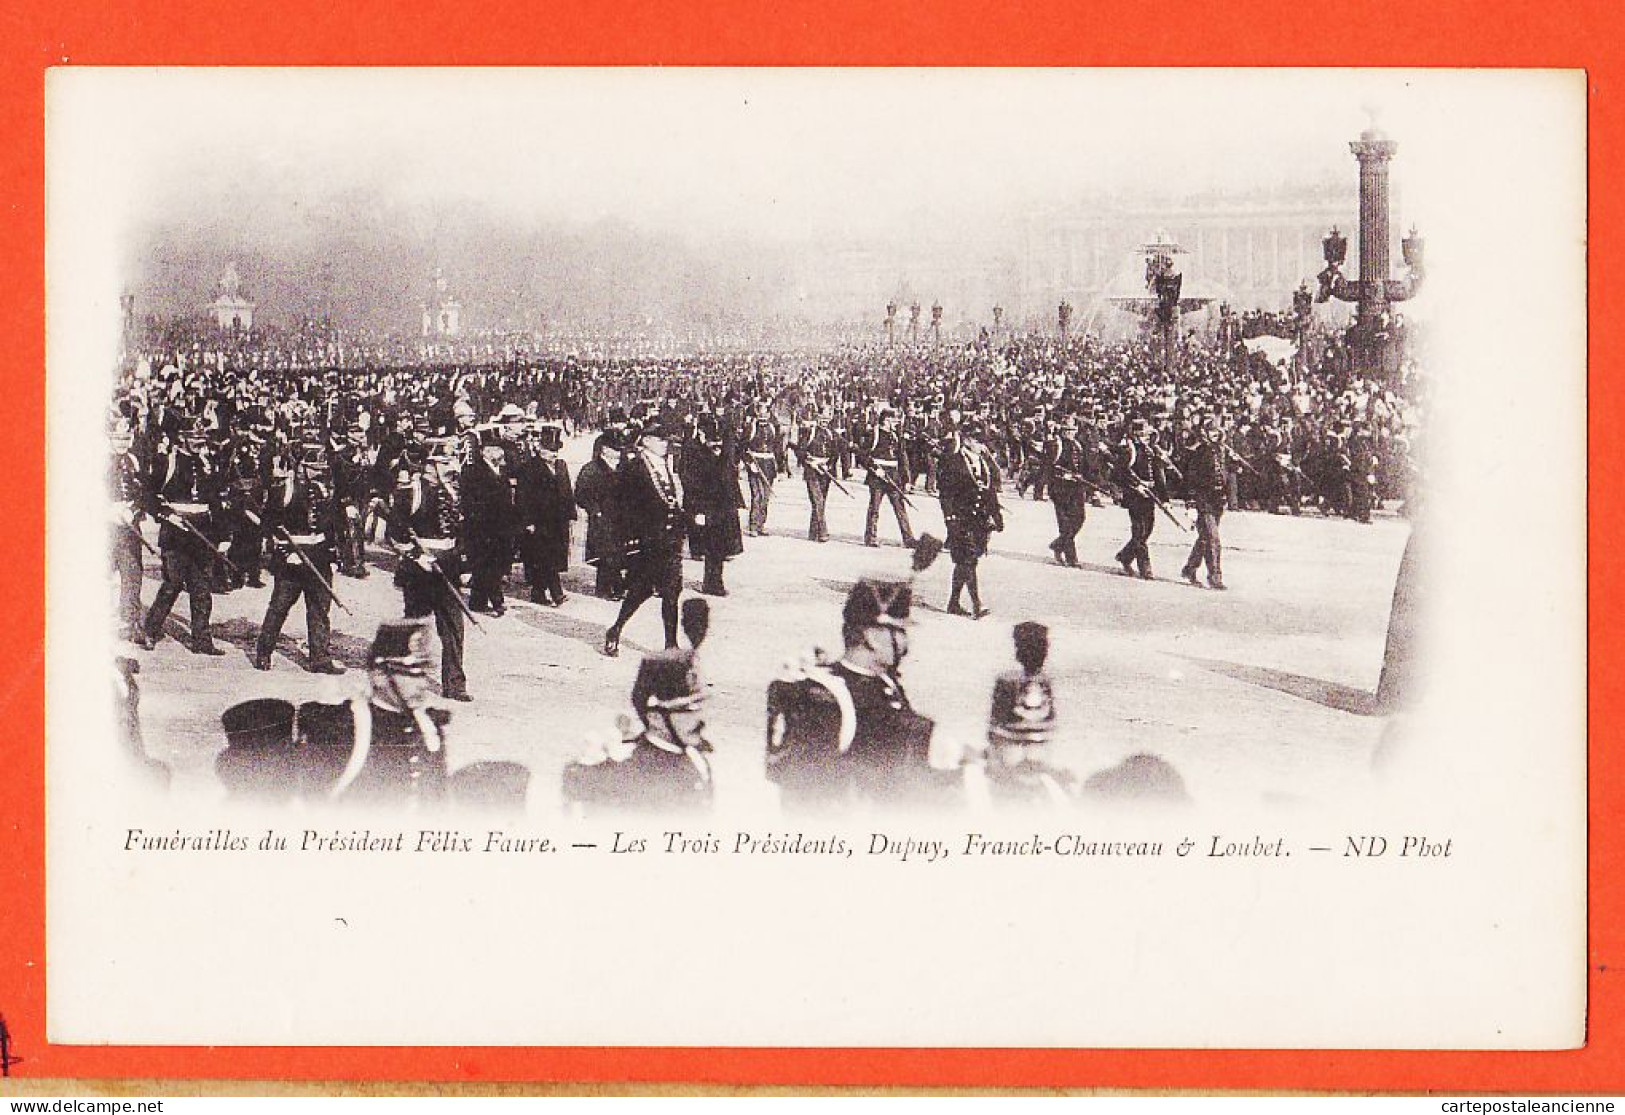 29106 / ⭐ Peu Commun PARIS 23 FEVRIER 1899 Funerailles Président FELIX FAURE 3 Présidents DUPUY FRANCK-CHAUVEAU LOUBET  - Funerales